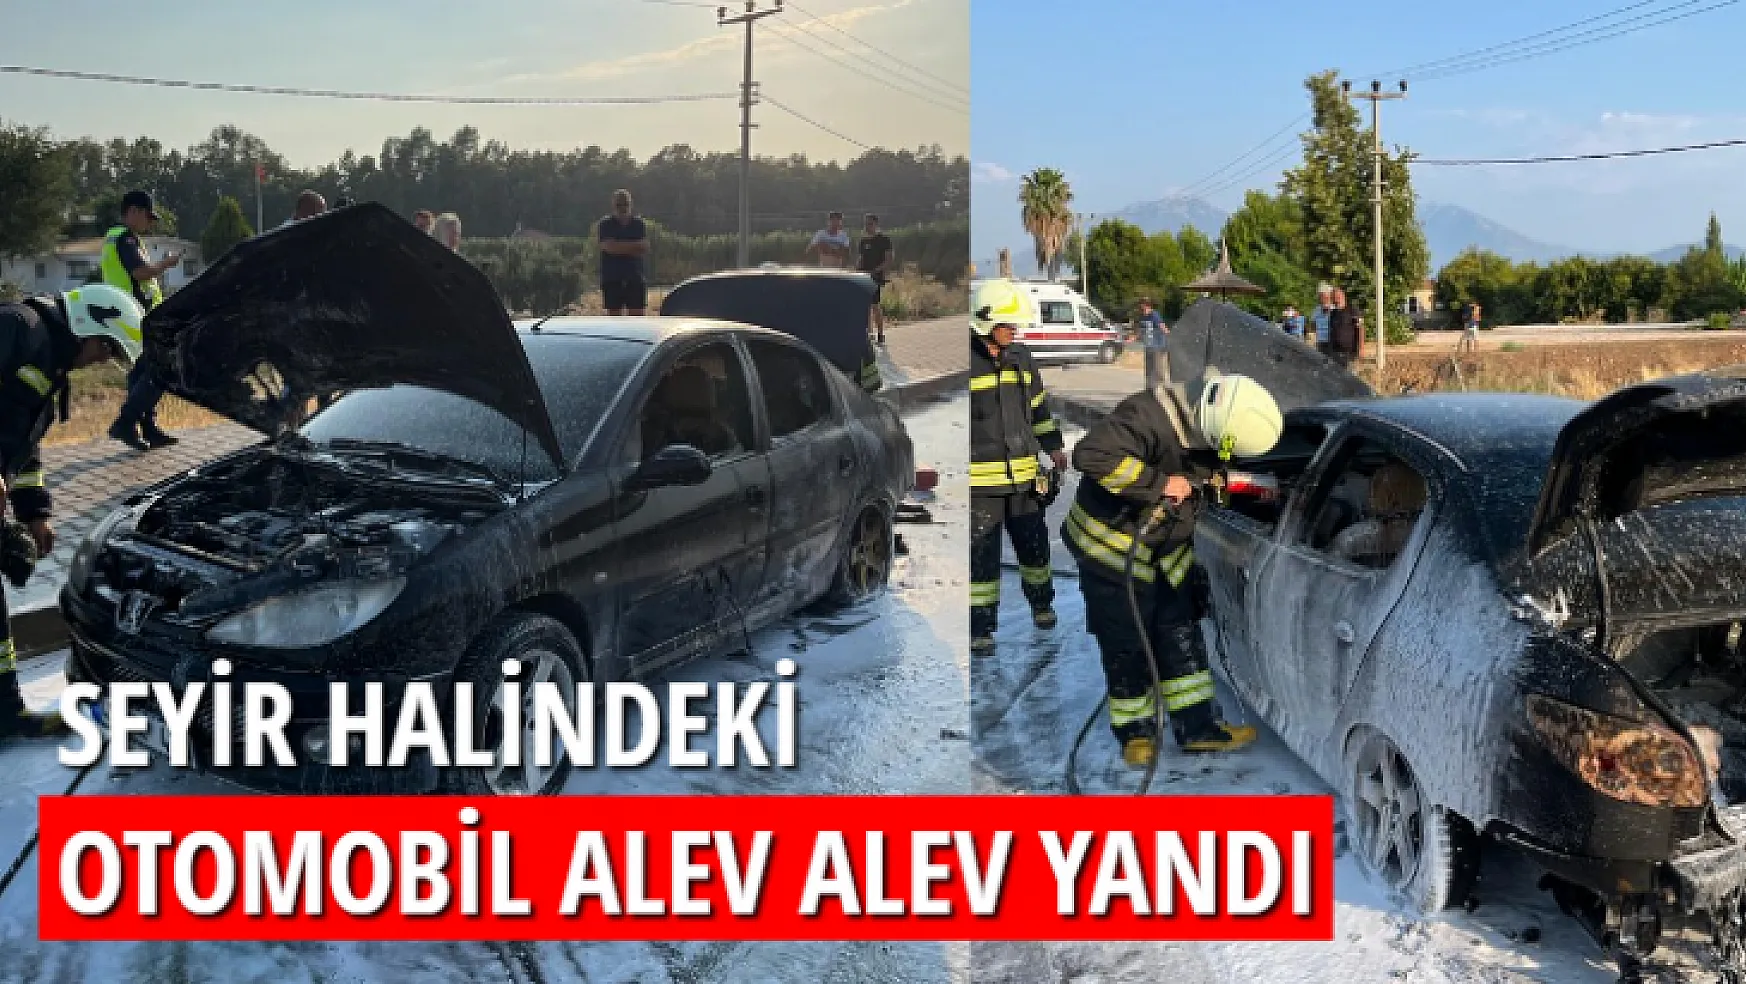 Fethiye'de seyir halindeki otomobil alev alev yandı